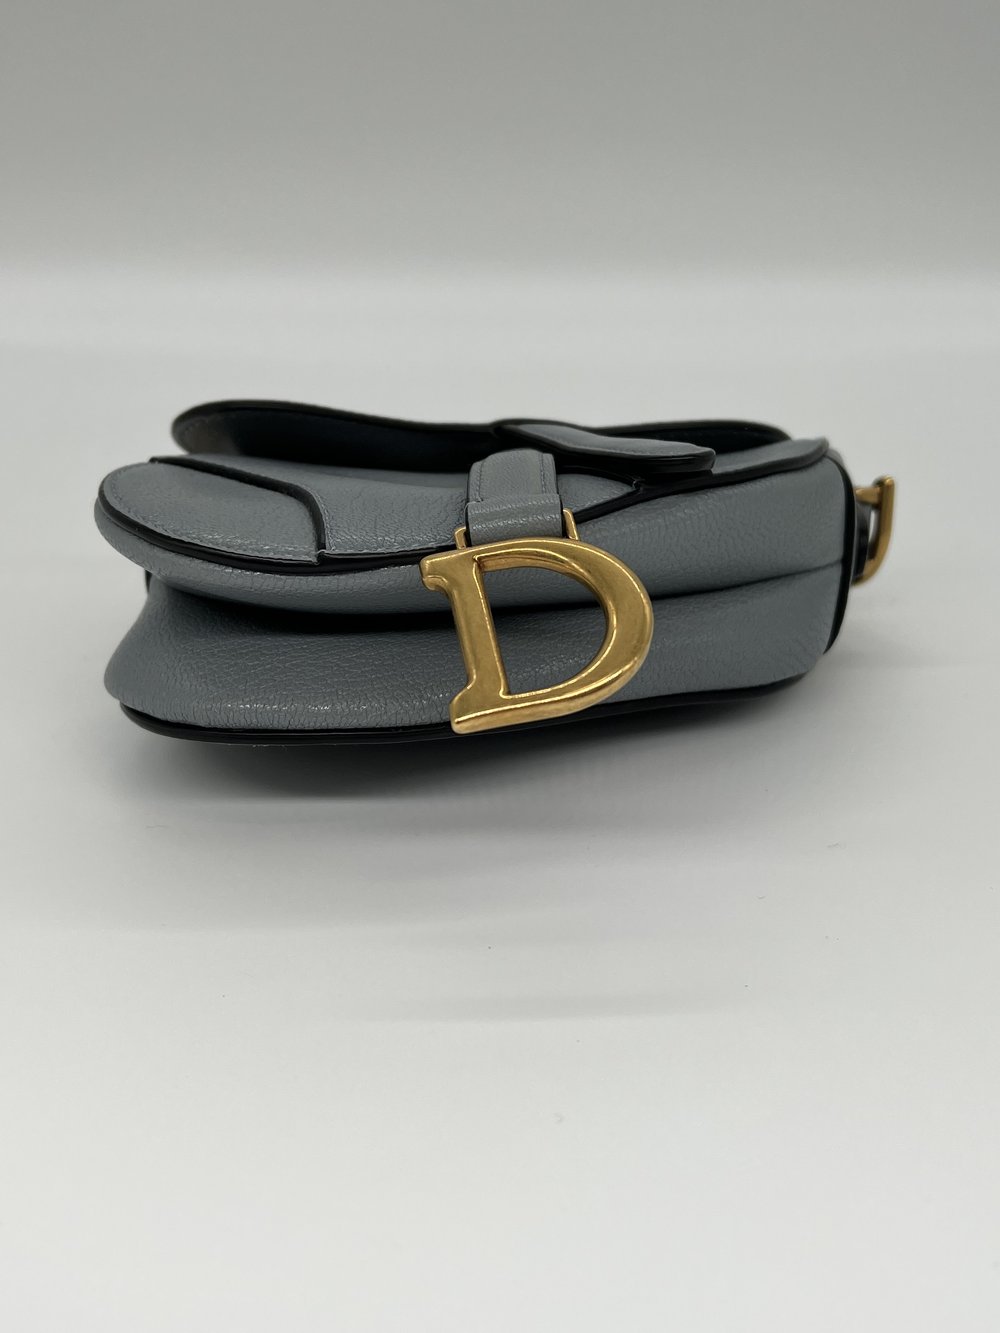 Dior Saddle Micro - Grey